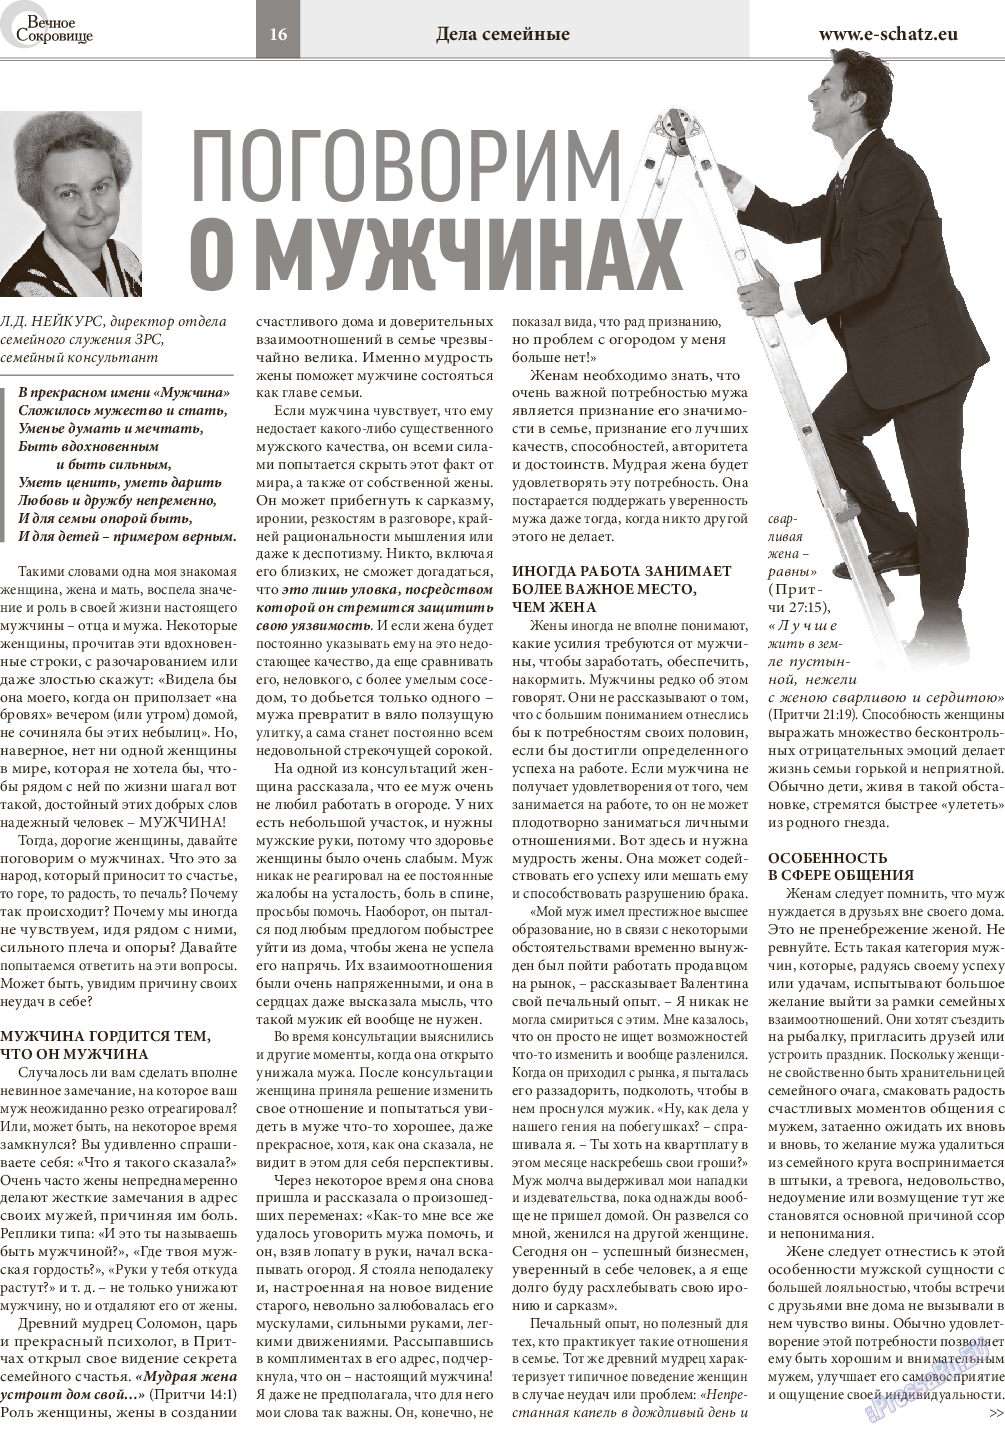 Вечное сокровище, газета. 2016 №2 стр.16